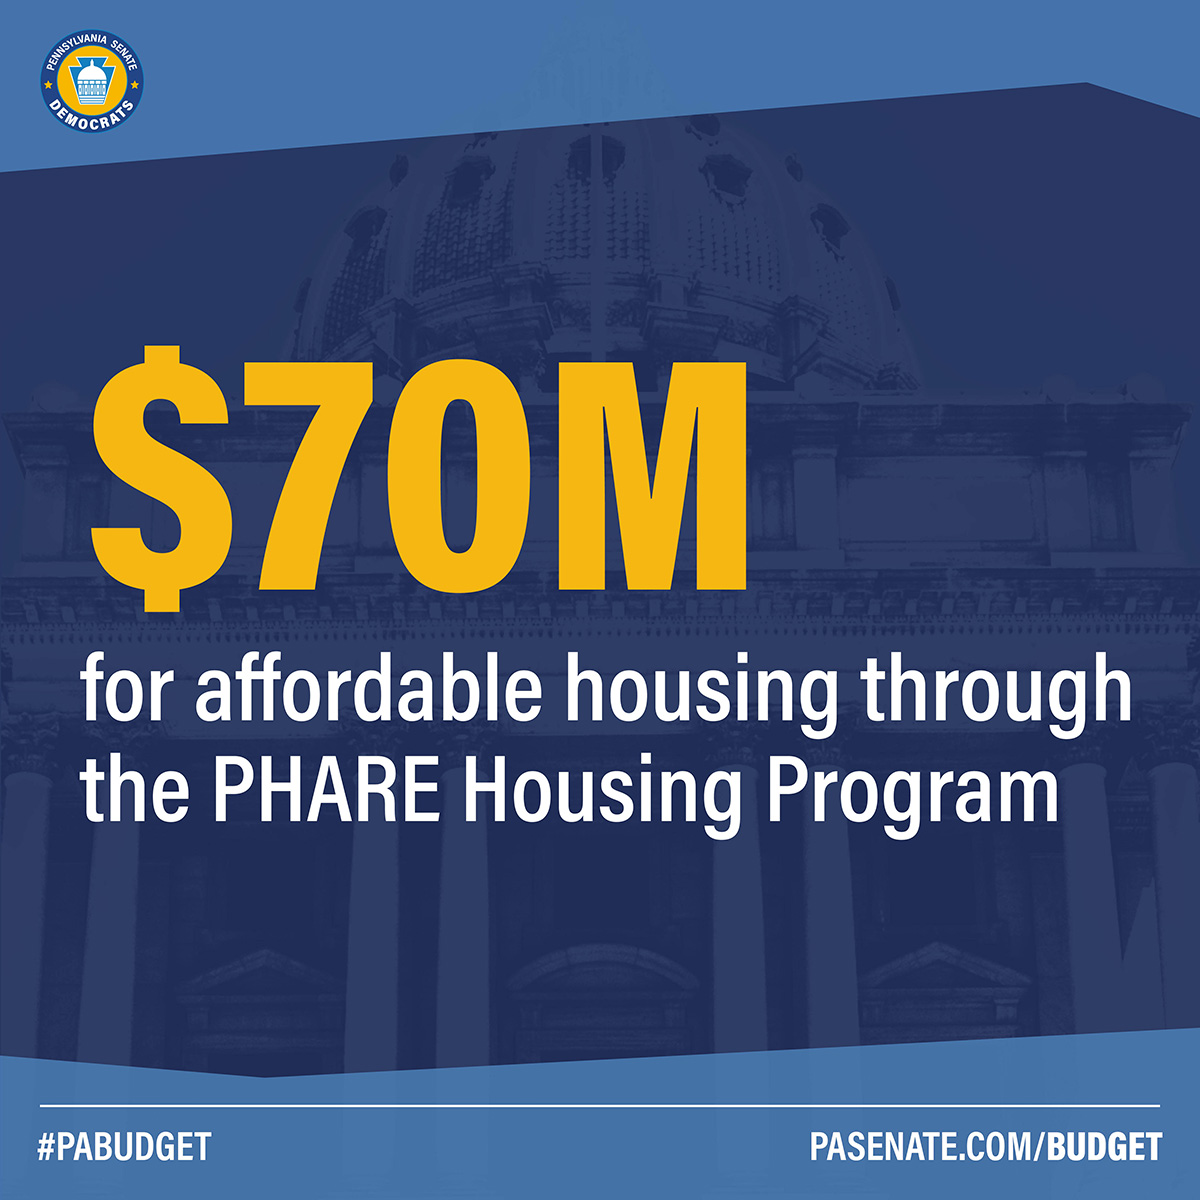 $70M for affordable housing through the PHARE Housing Program